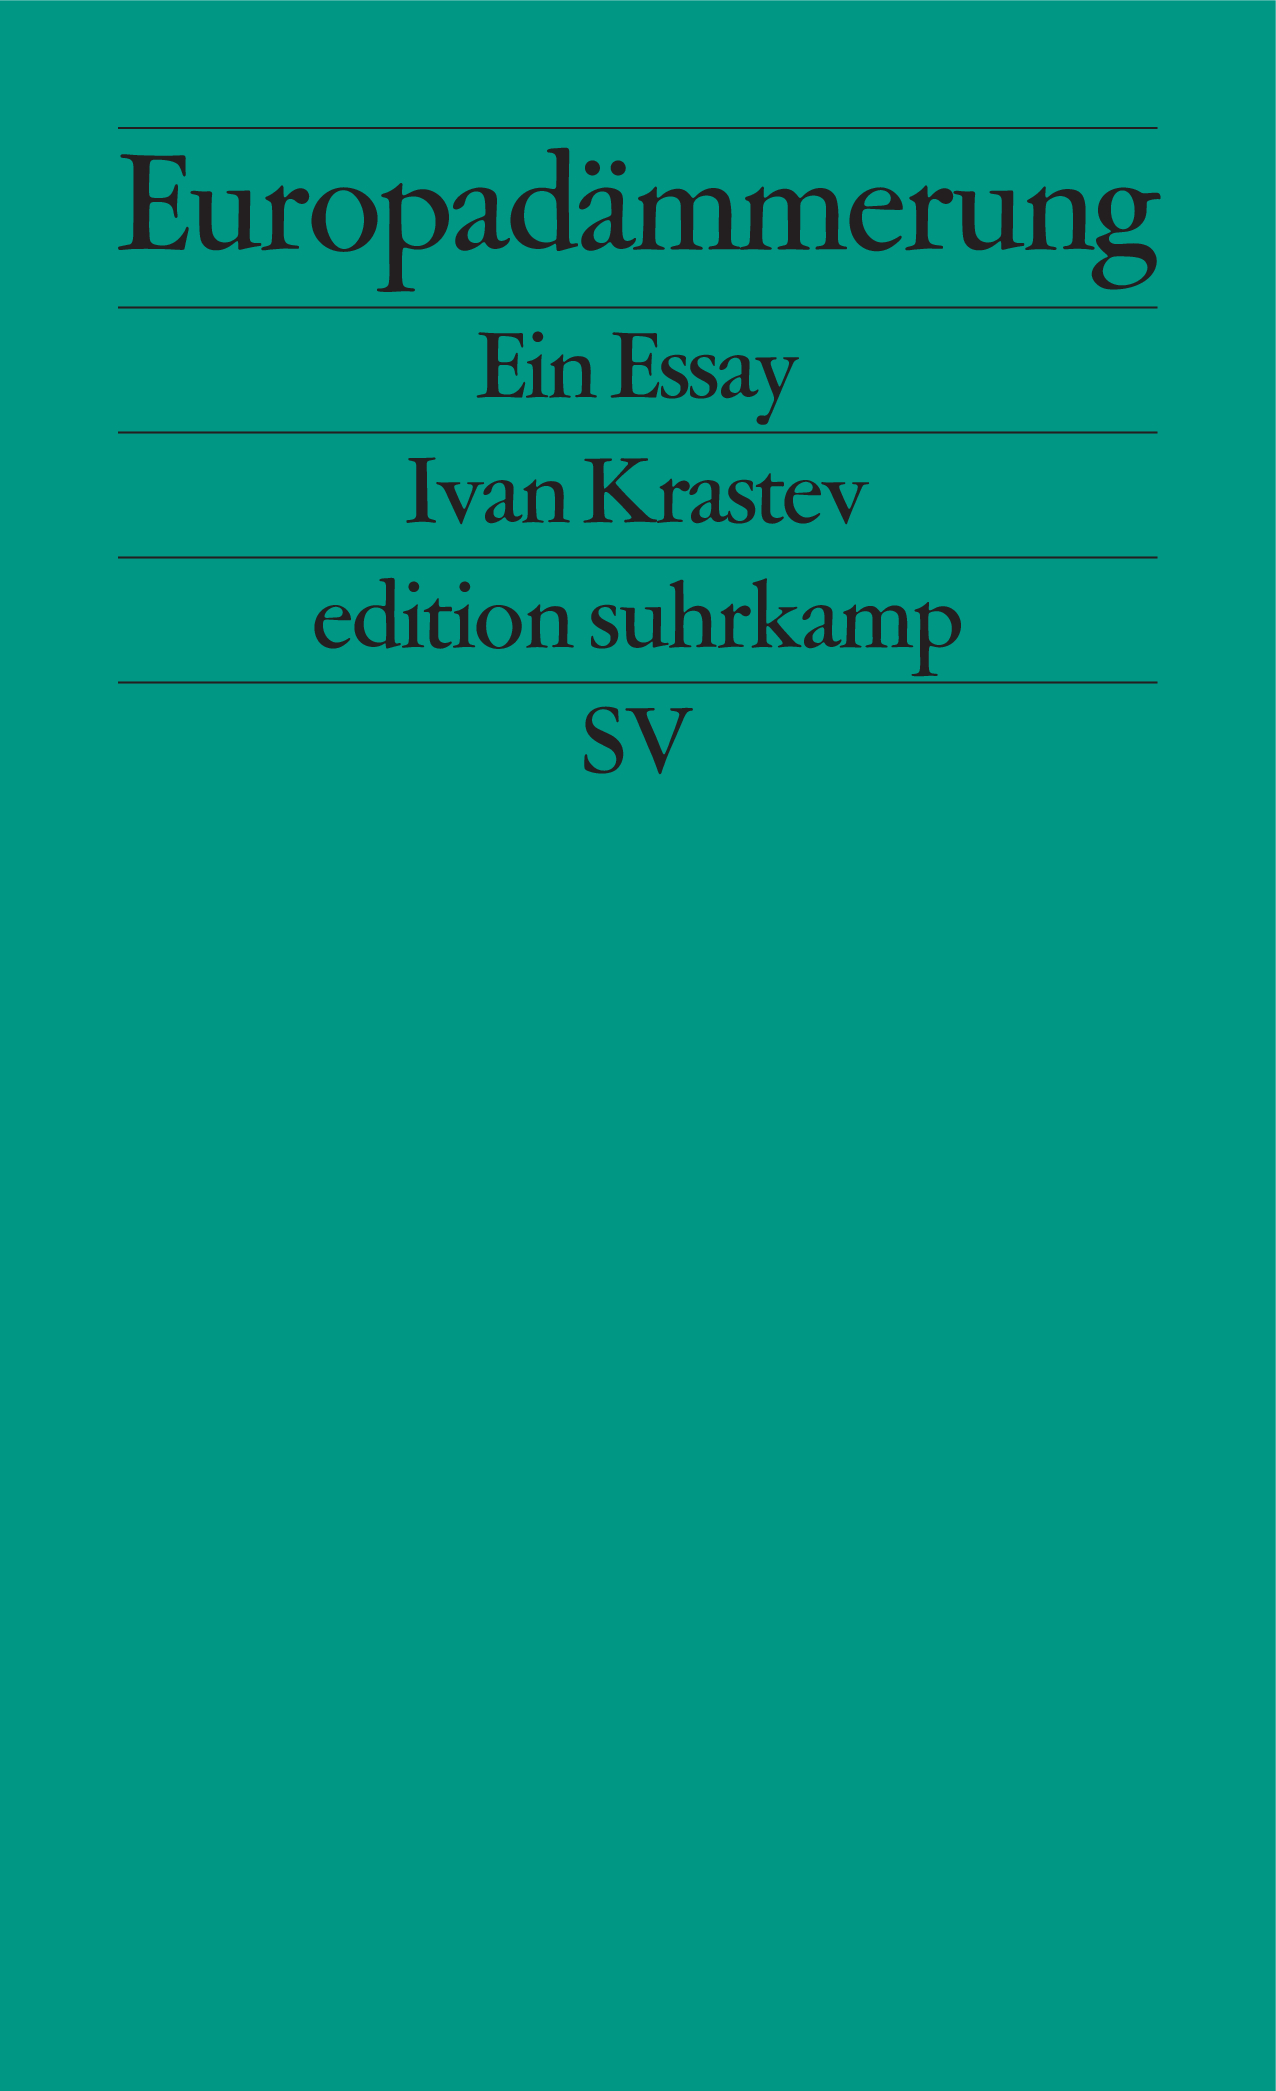 Krastev, Ivan: Europadämmerung. Ein Essay, 2017